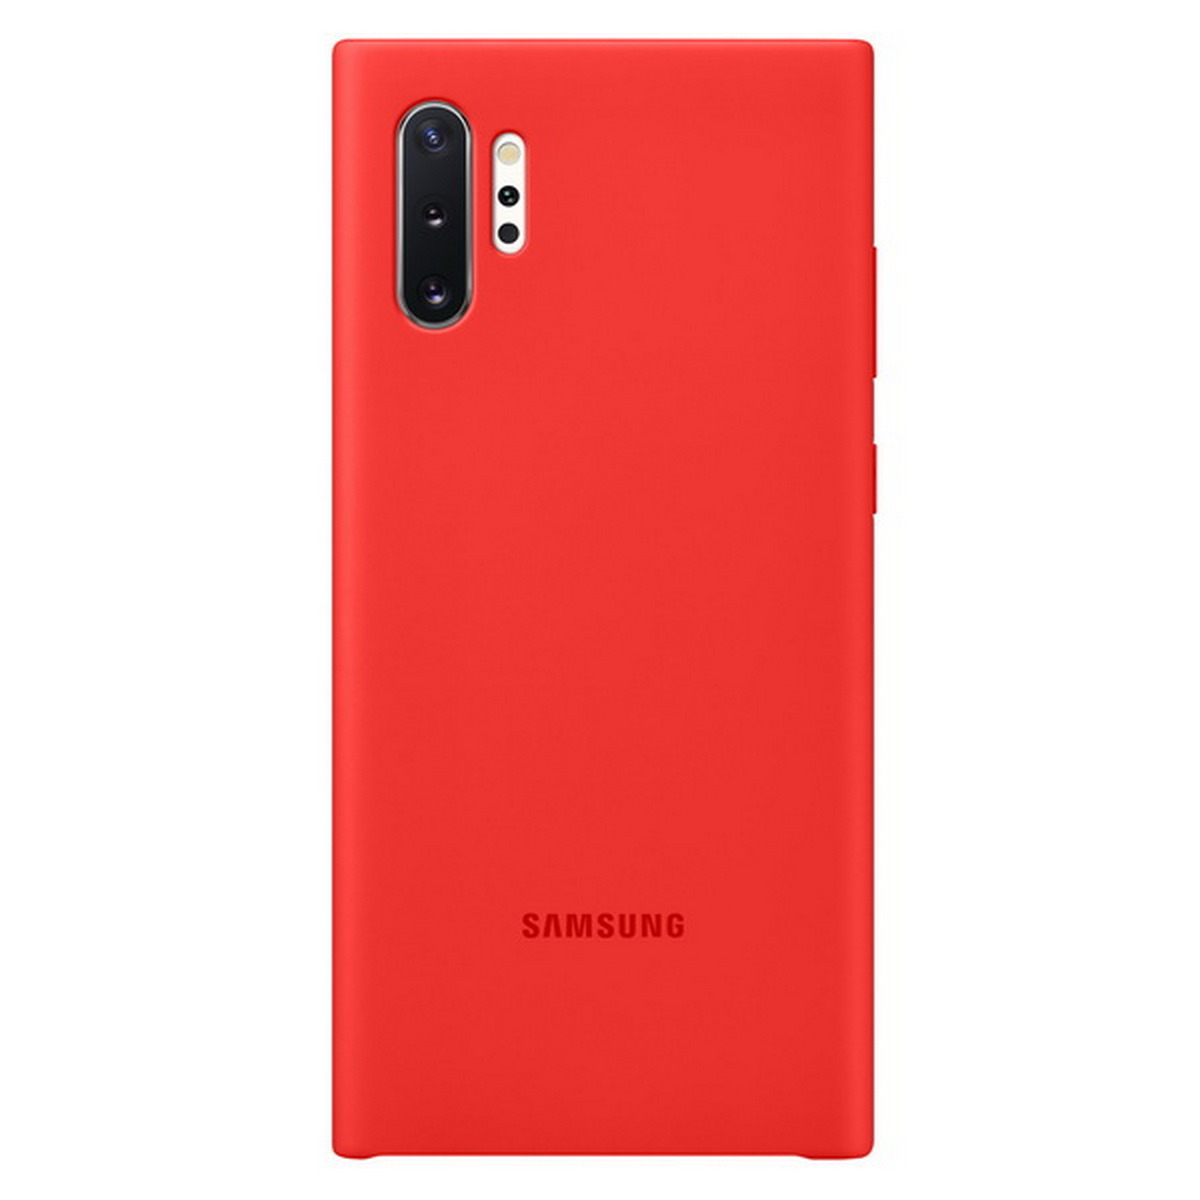 Silicone Cover Samsung Galaxy Note10+ ตระกูลสี Red รูปแบบรุ่นที่ีรองรับ Samsung Note10+